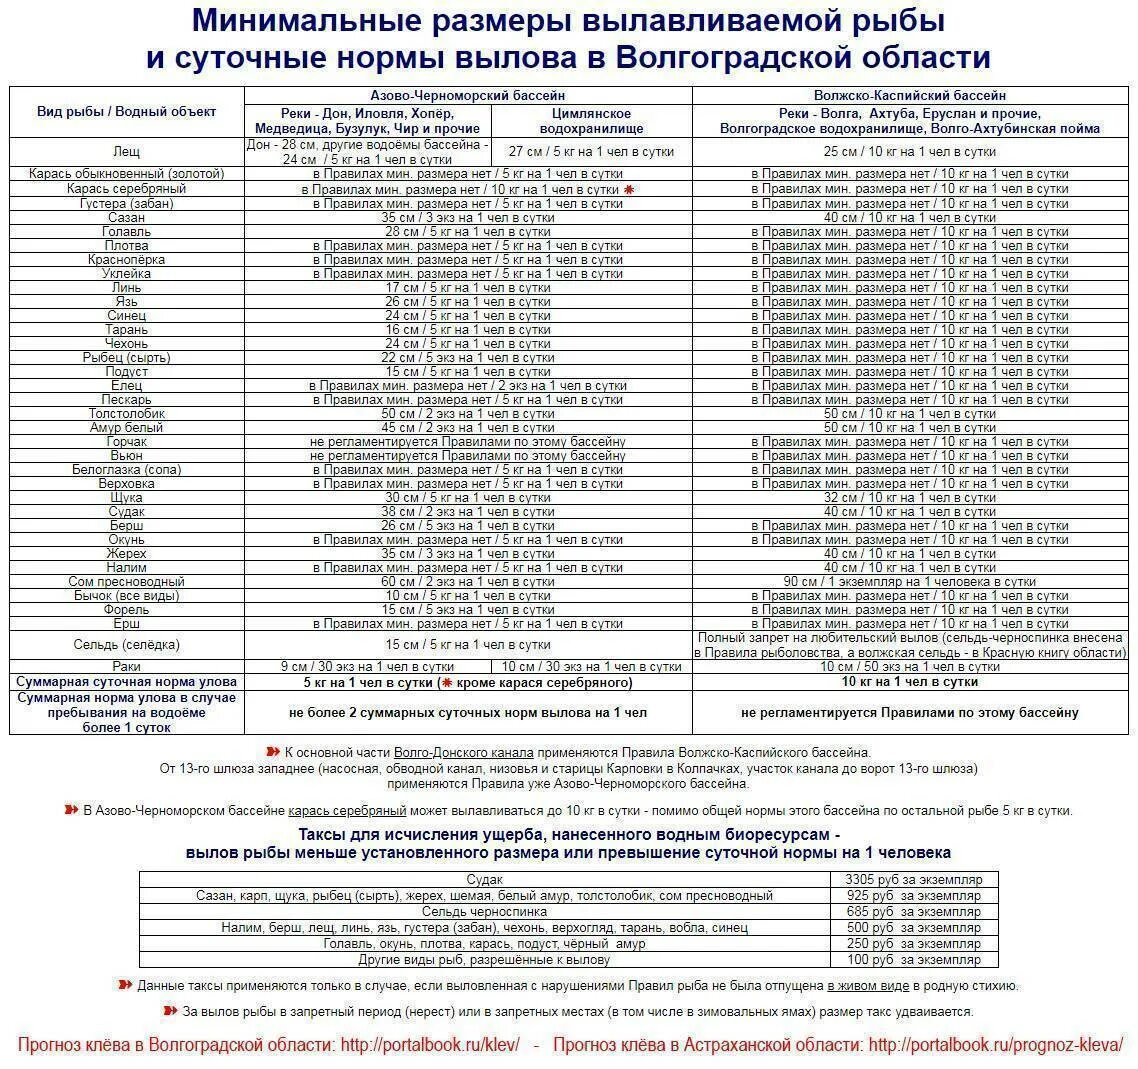 Правила любительского рыболовства в астраханской области. Таблица нормы вылова рыбы. Разрешенный размер рыбы для вылова в Волгоградской области 2020. Норма вылова и размер рыбы в Волгоградской области. Нормы и размер вылова рыбы в Астраханской области.